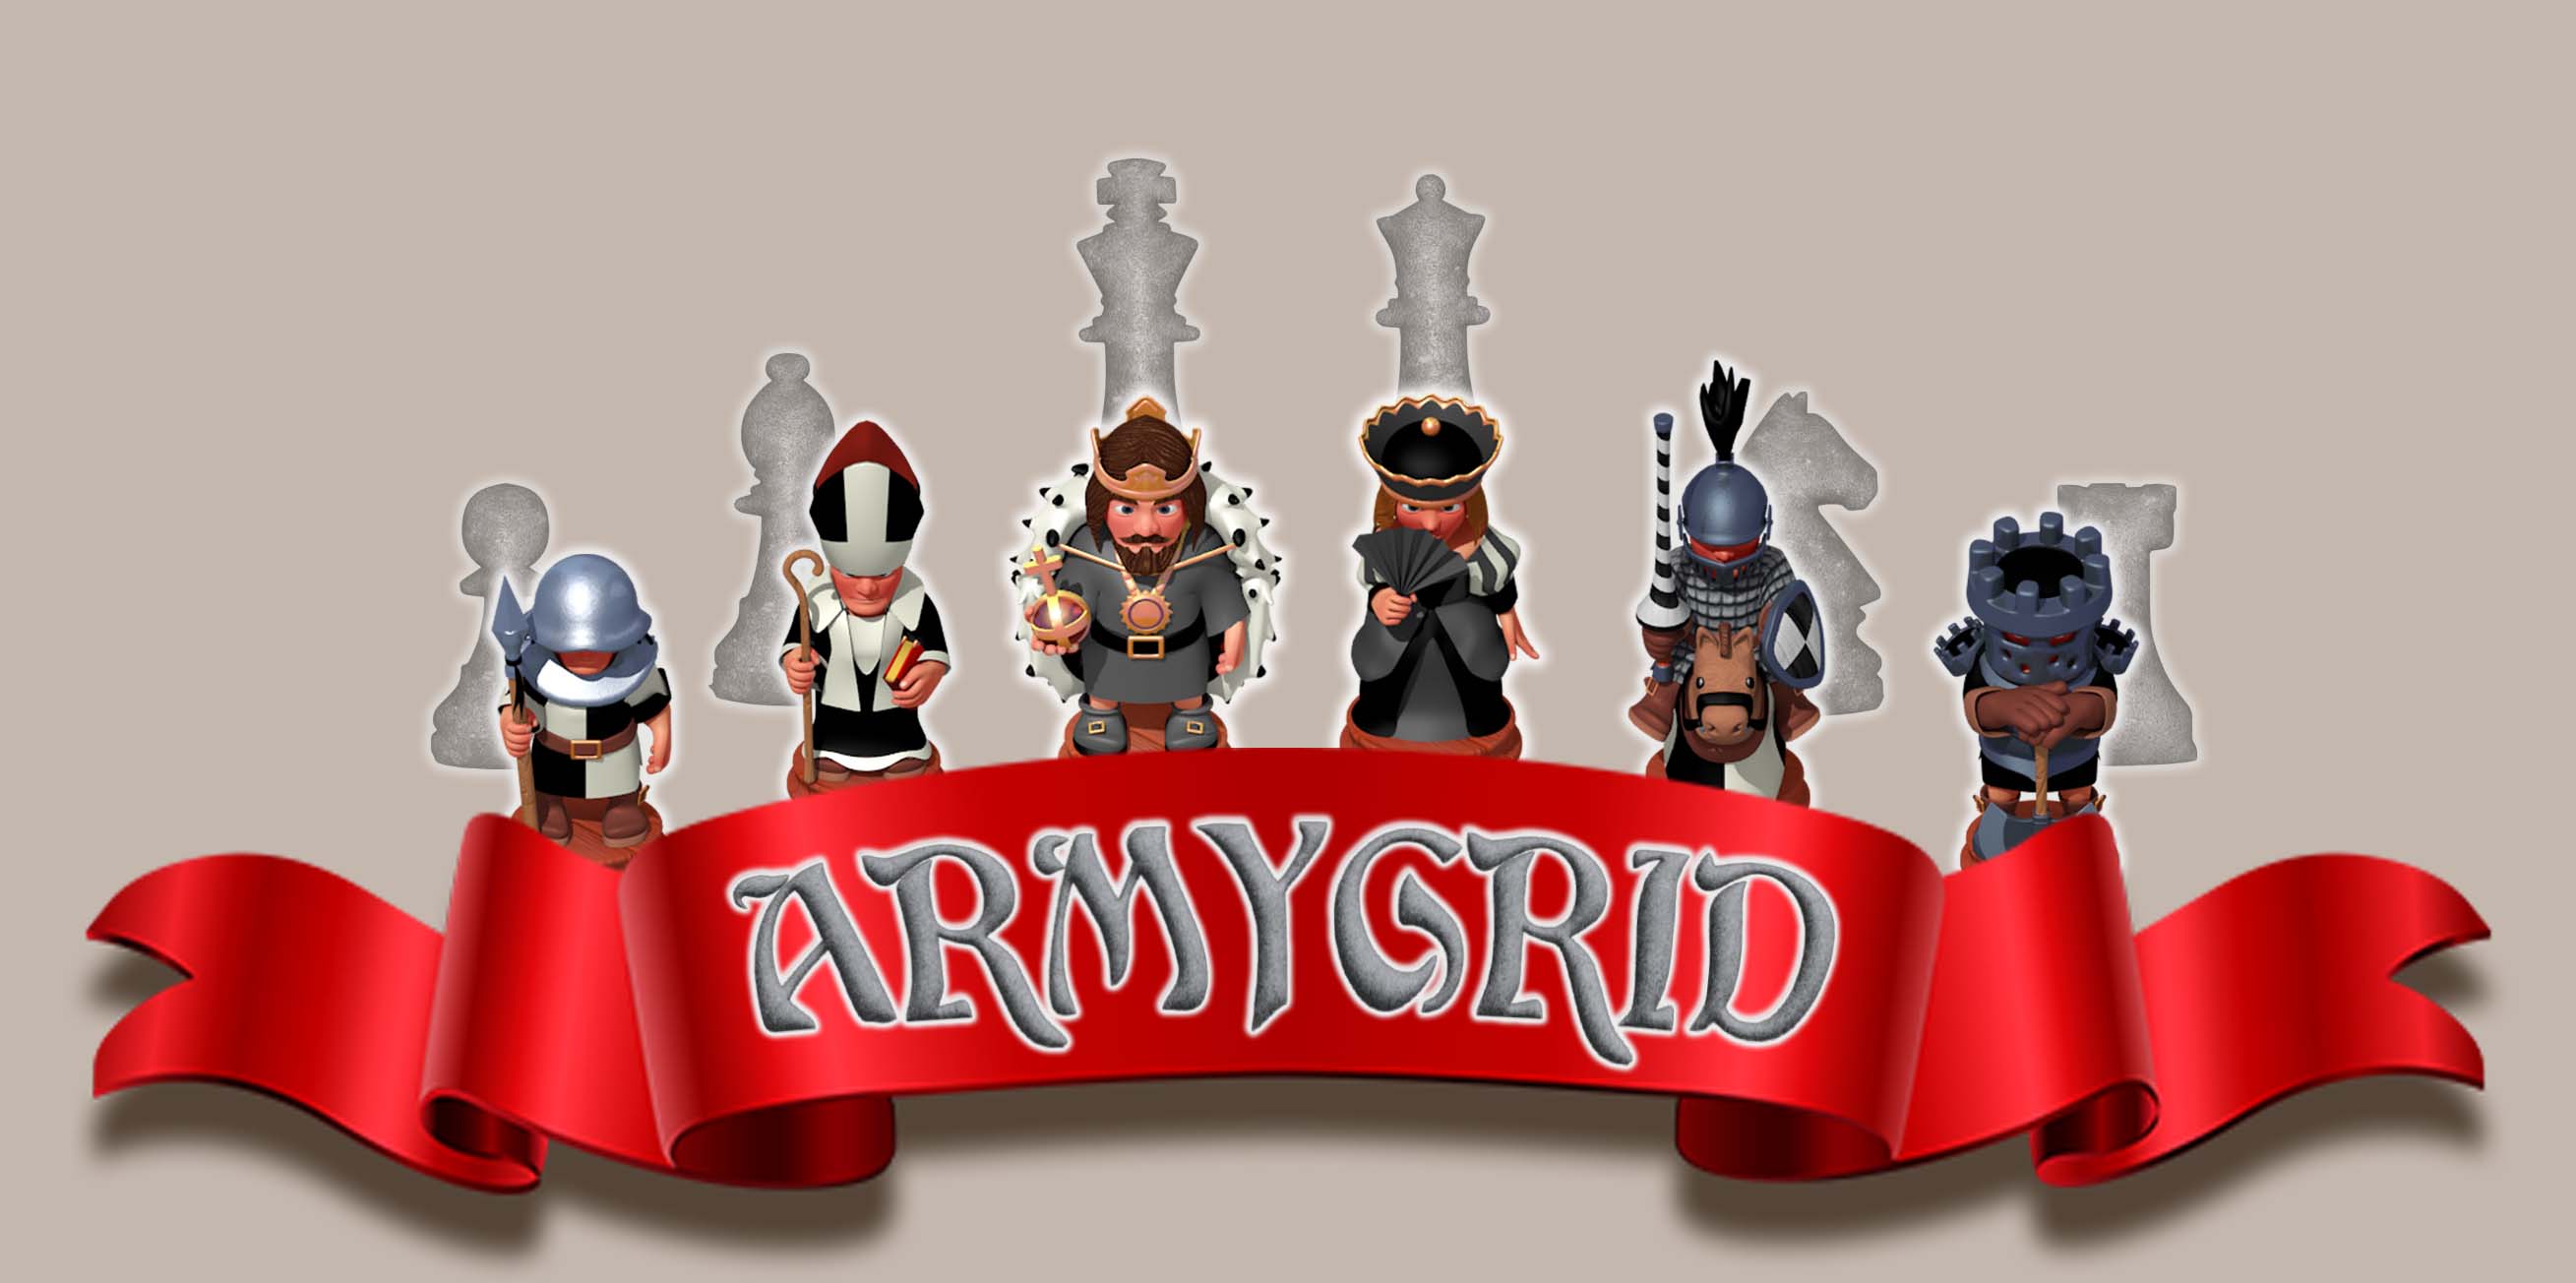 Armygrid - MMORTS